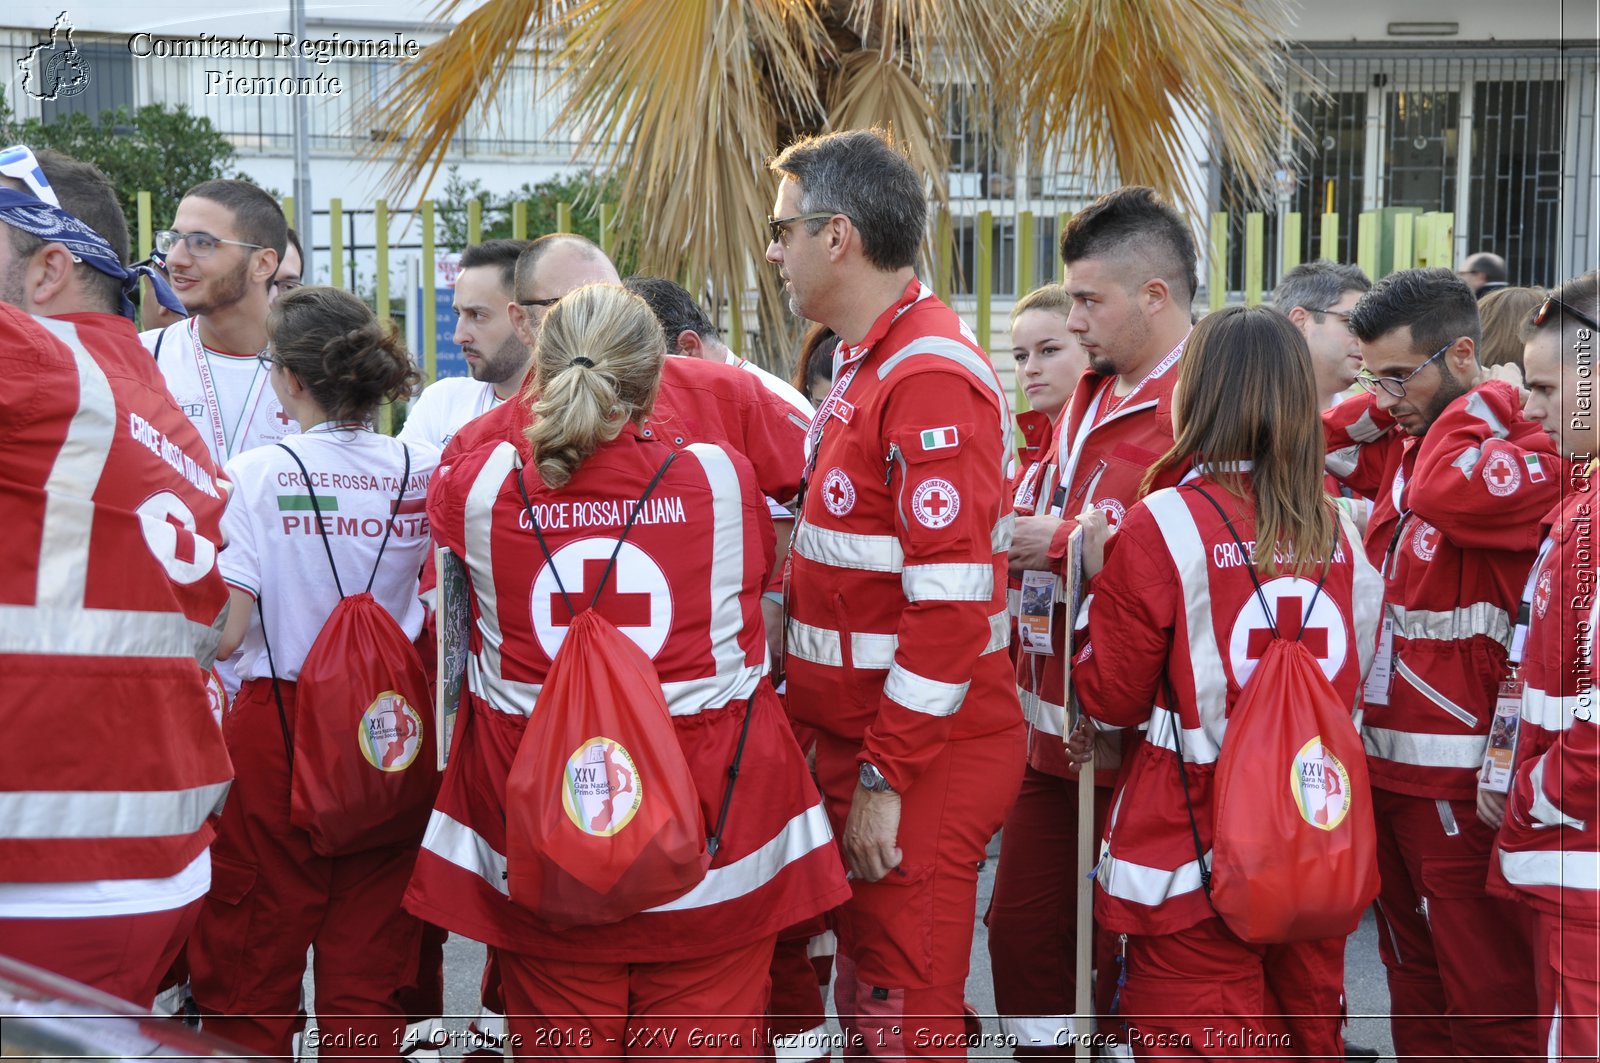 Scalea 14 Ottobre 2018 - XXV Gara Nazionale 1 Soccorso - Croce Rossa Italiana- Comitato Regionale del Piemonte